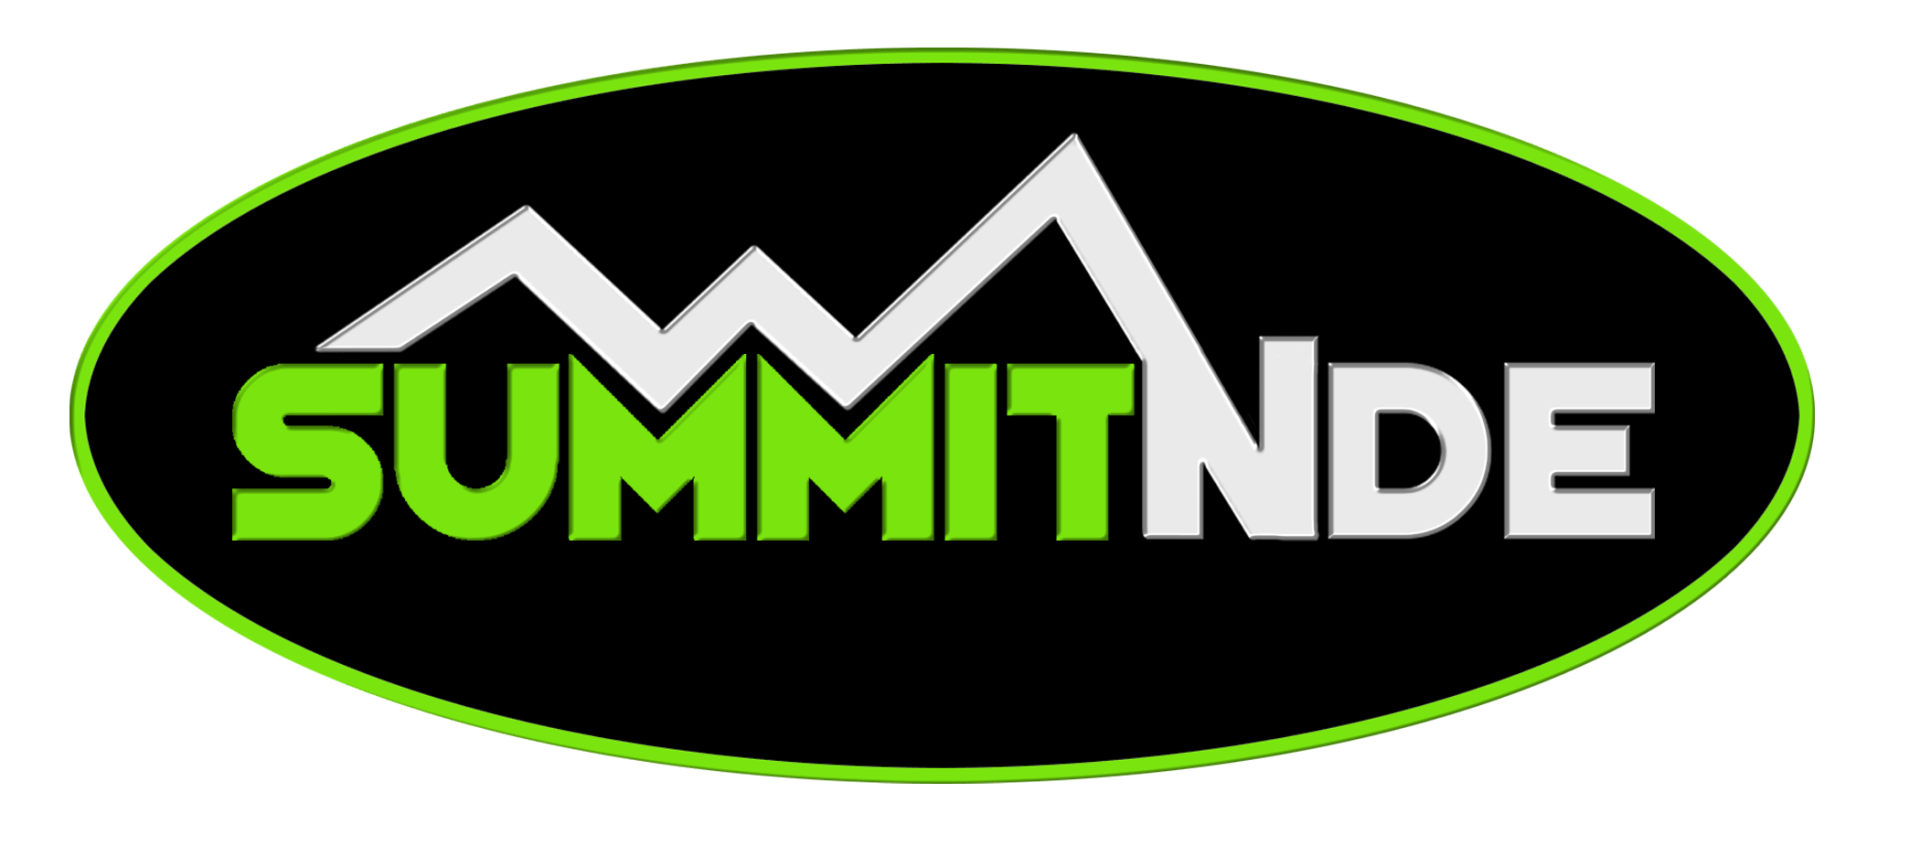 Summit NDE.